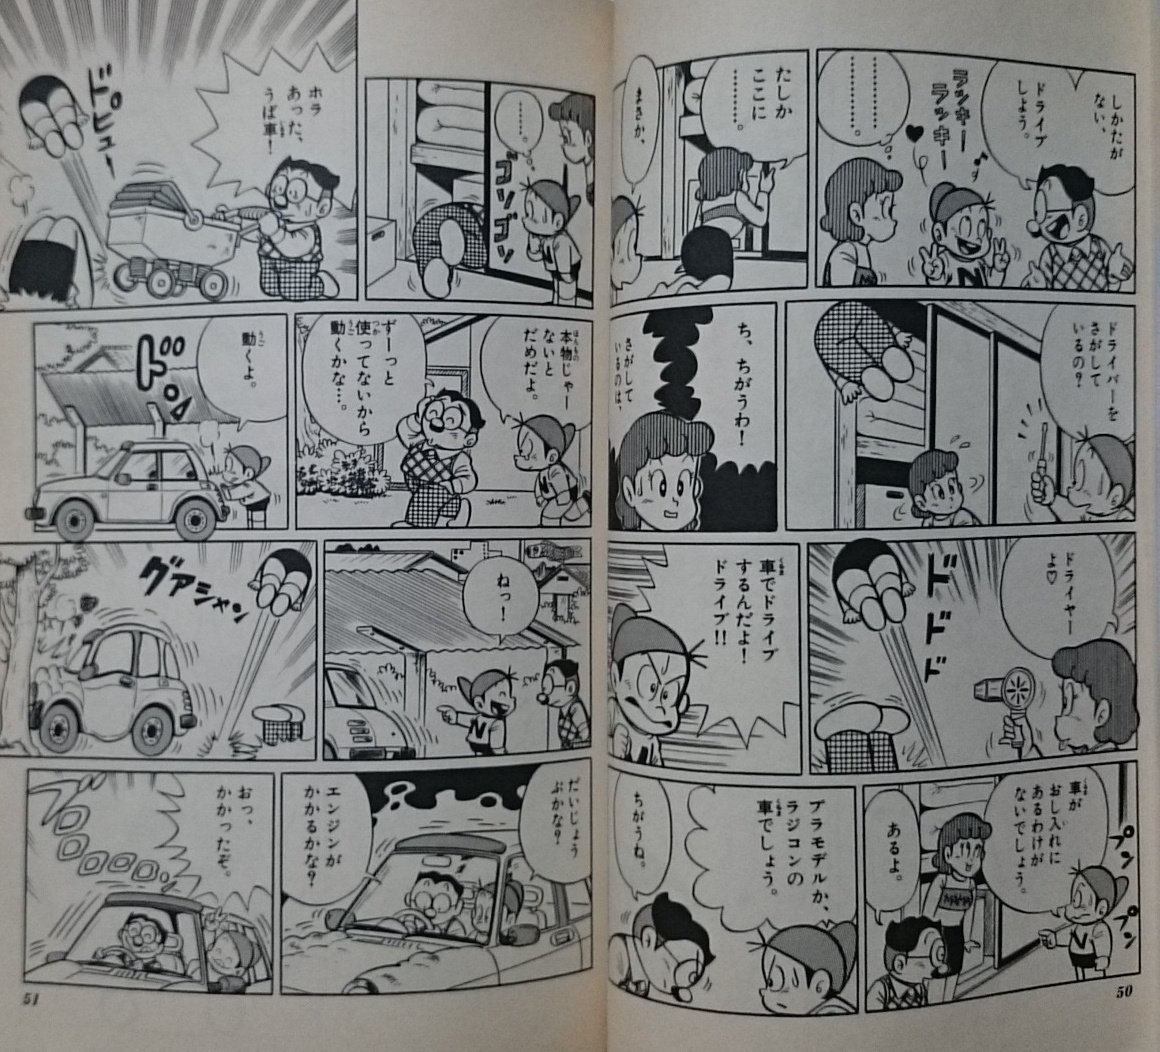 ミサキトージ Pa Twitter Japan Manga Bot のんきくんといえば方倉先生の のんきくん が思い出されますが 改めて読むとこの ズッコケ表現 のサンプリング感は凄まじく そろそろ誰か継承すべきでは と思うほどの素晴らしい表現技法なのです T Co